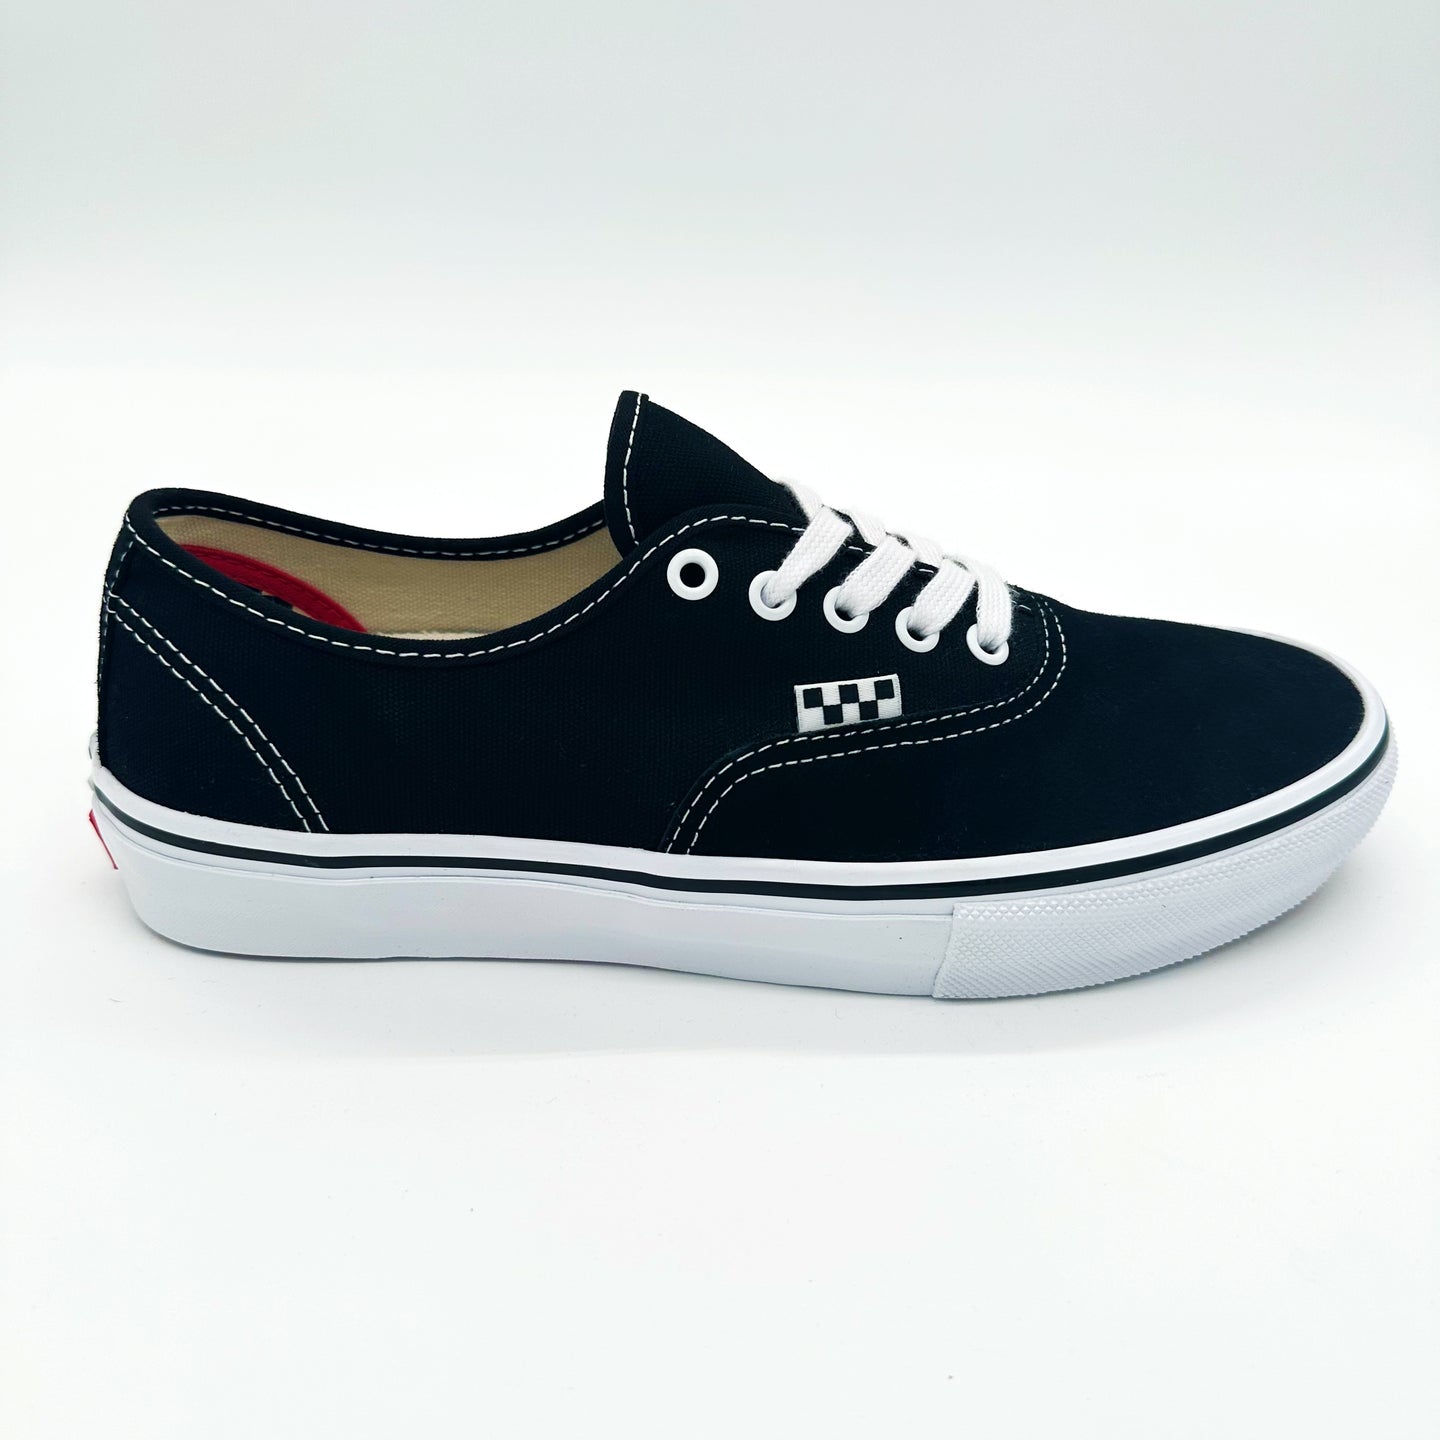 Vans Skate Authentic Shoes-Black/White